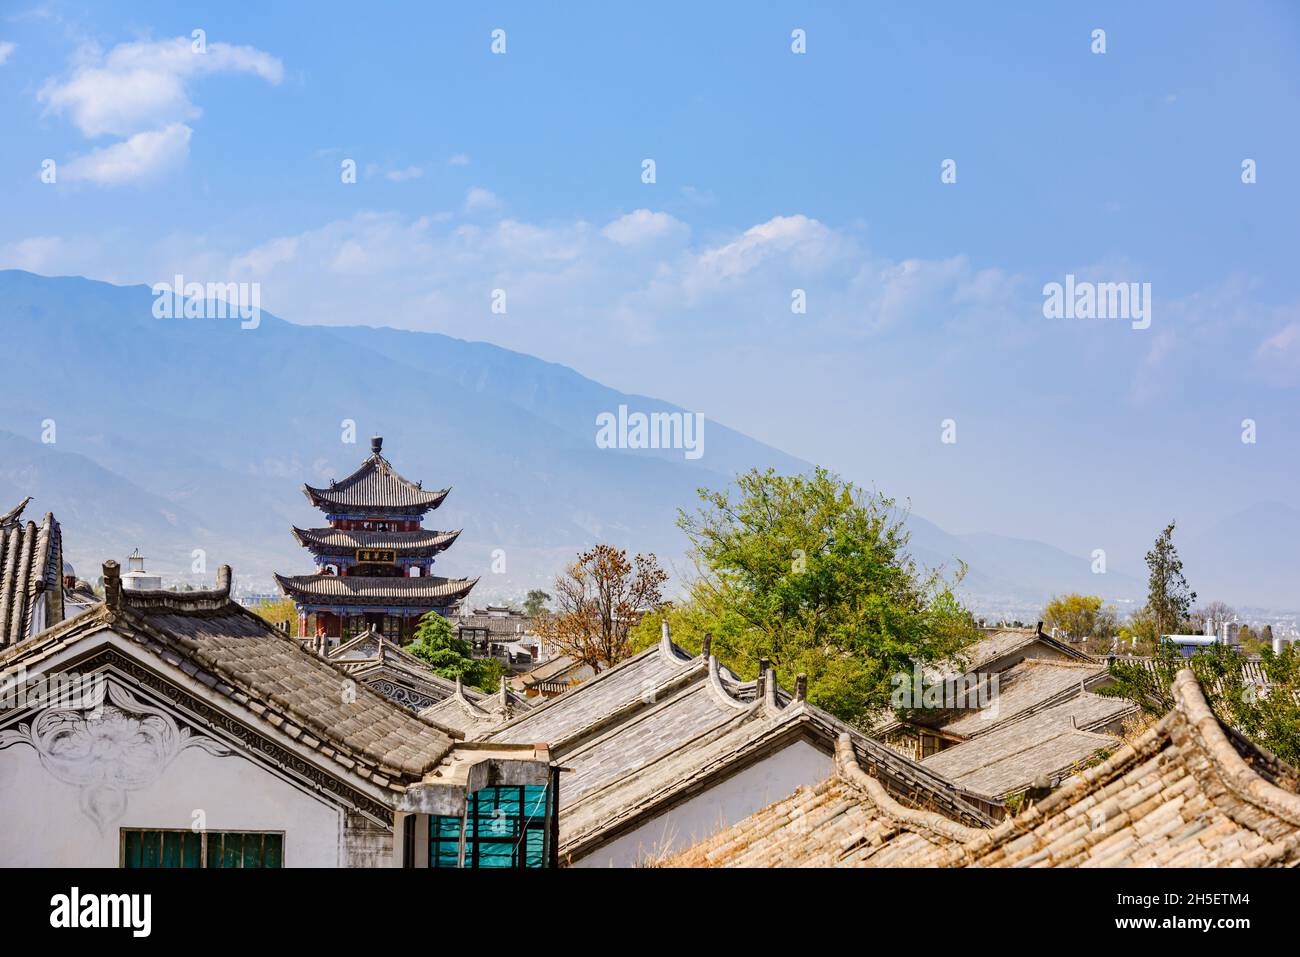 Yunnan, China - 25 March 2016: Dali ancient cityscape and pagoda, Yunnan, China Stock Photo